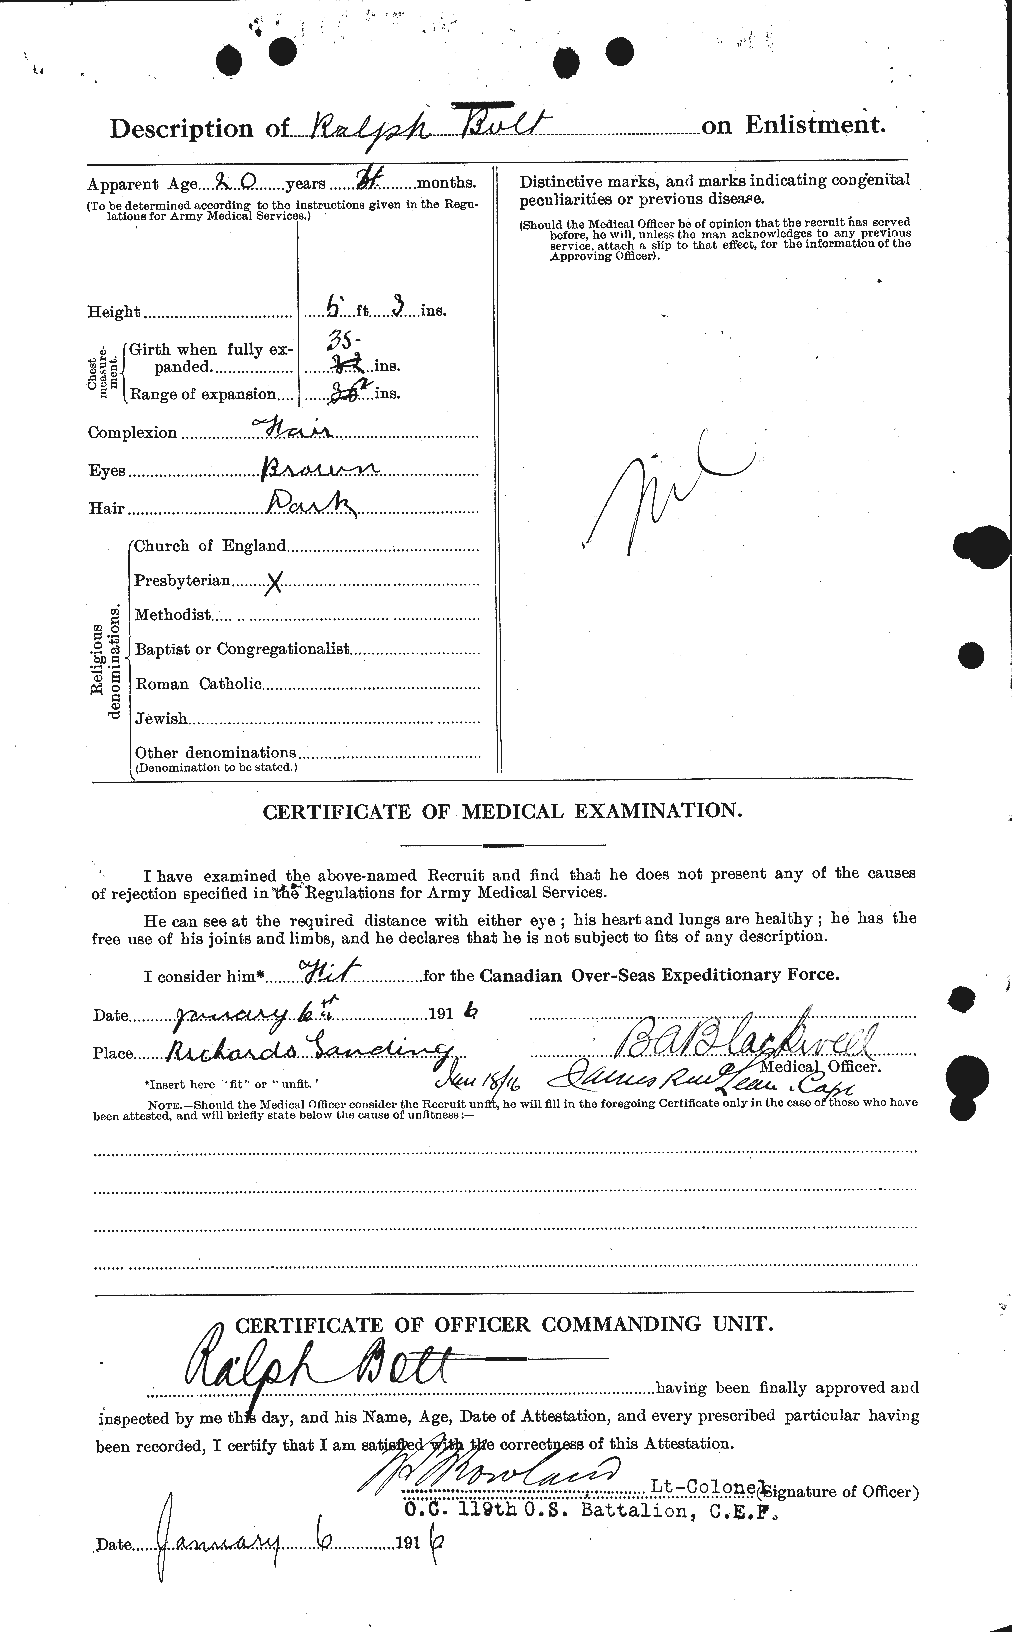 Dossiers du Personnel de la Première Guerre mondiale - CEC 249951b